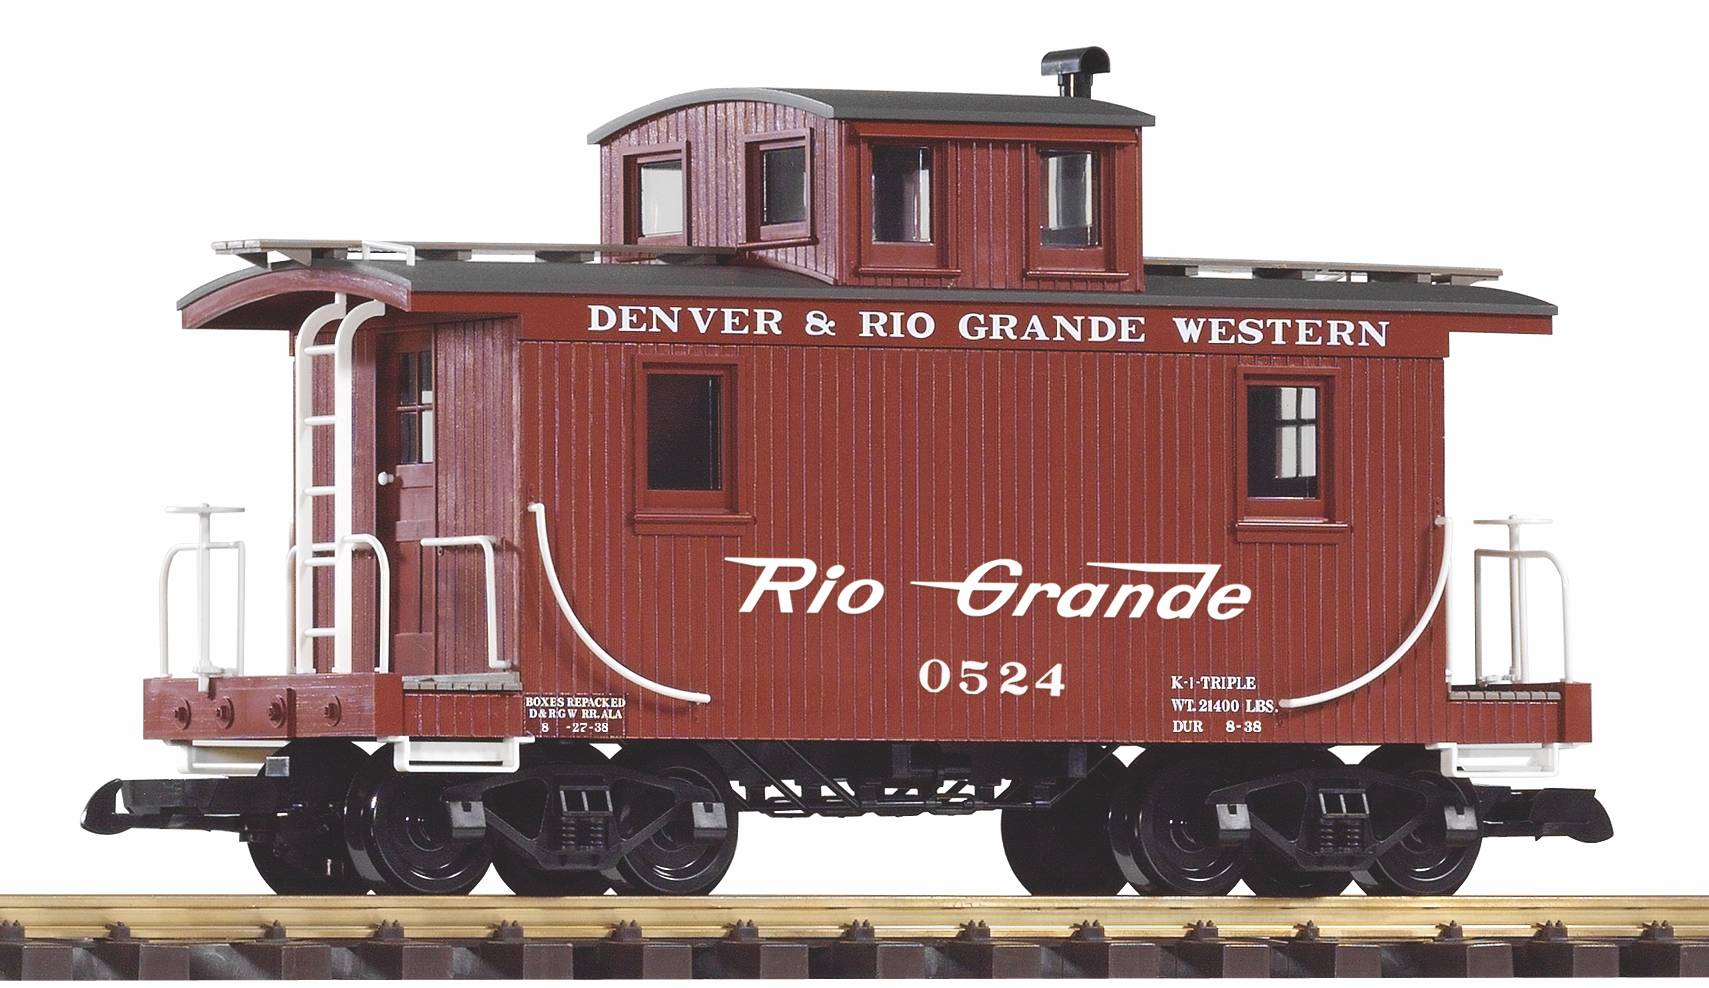 PIKO Art. Nr. 38947 - G Gterzugbegleitwagen, Denver & Rio Grande Western. 